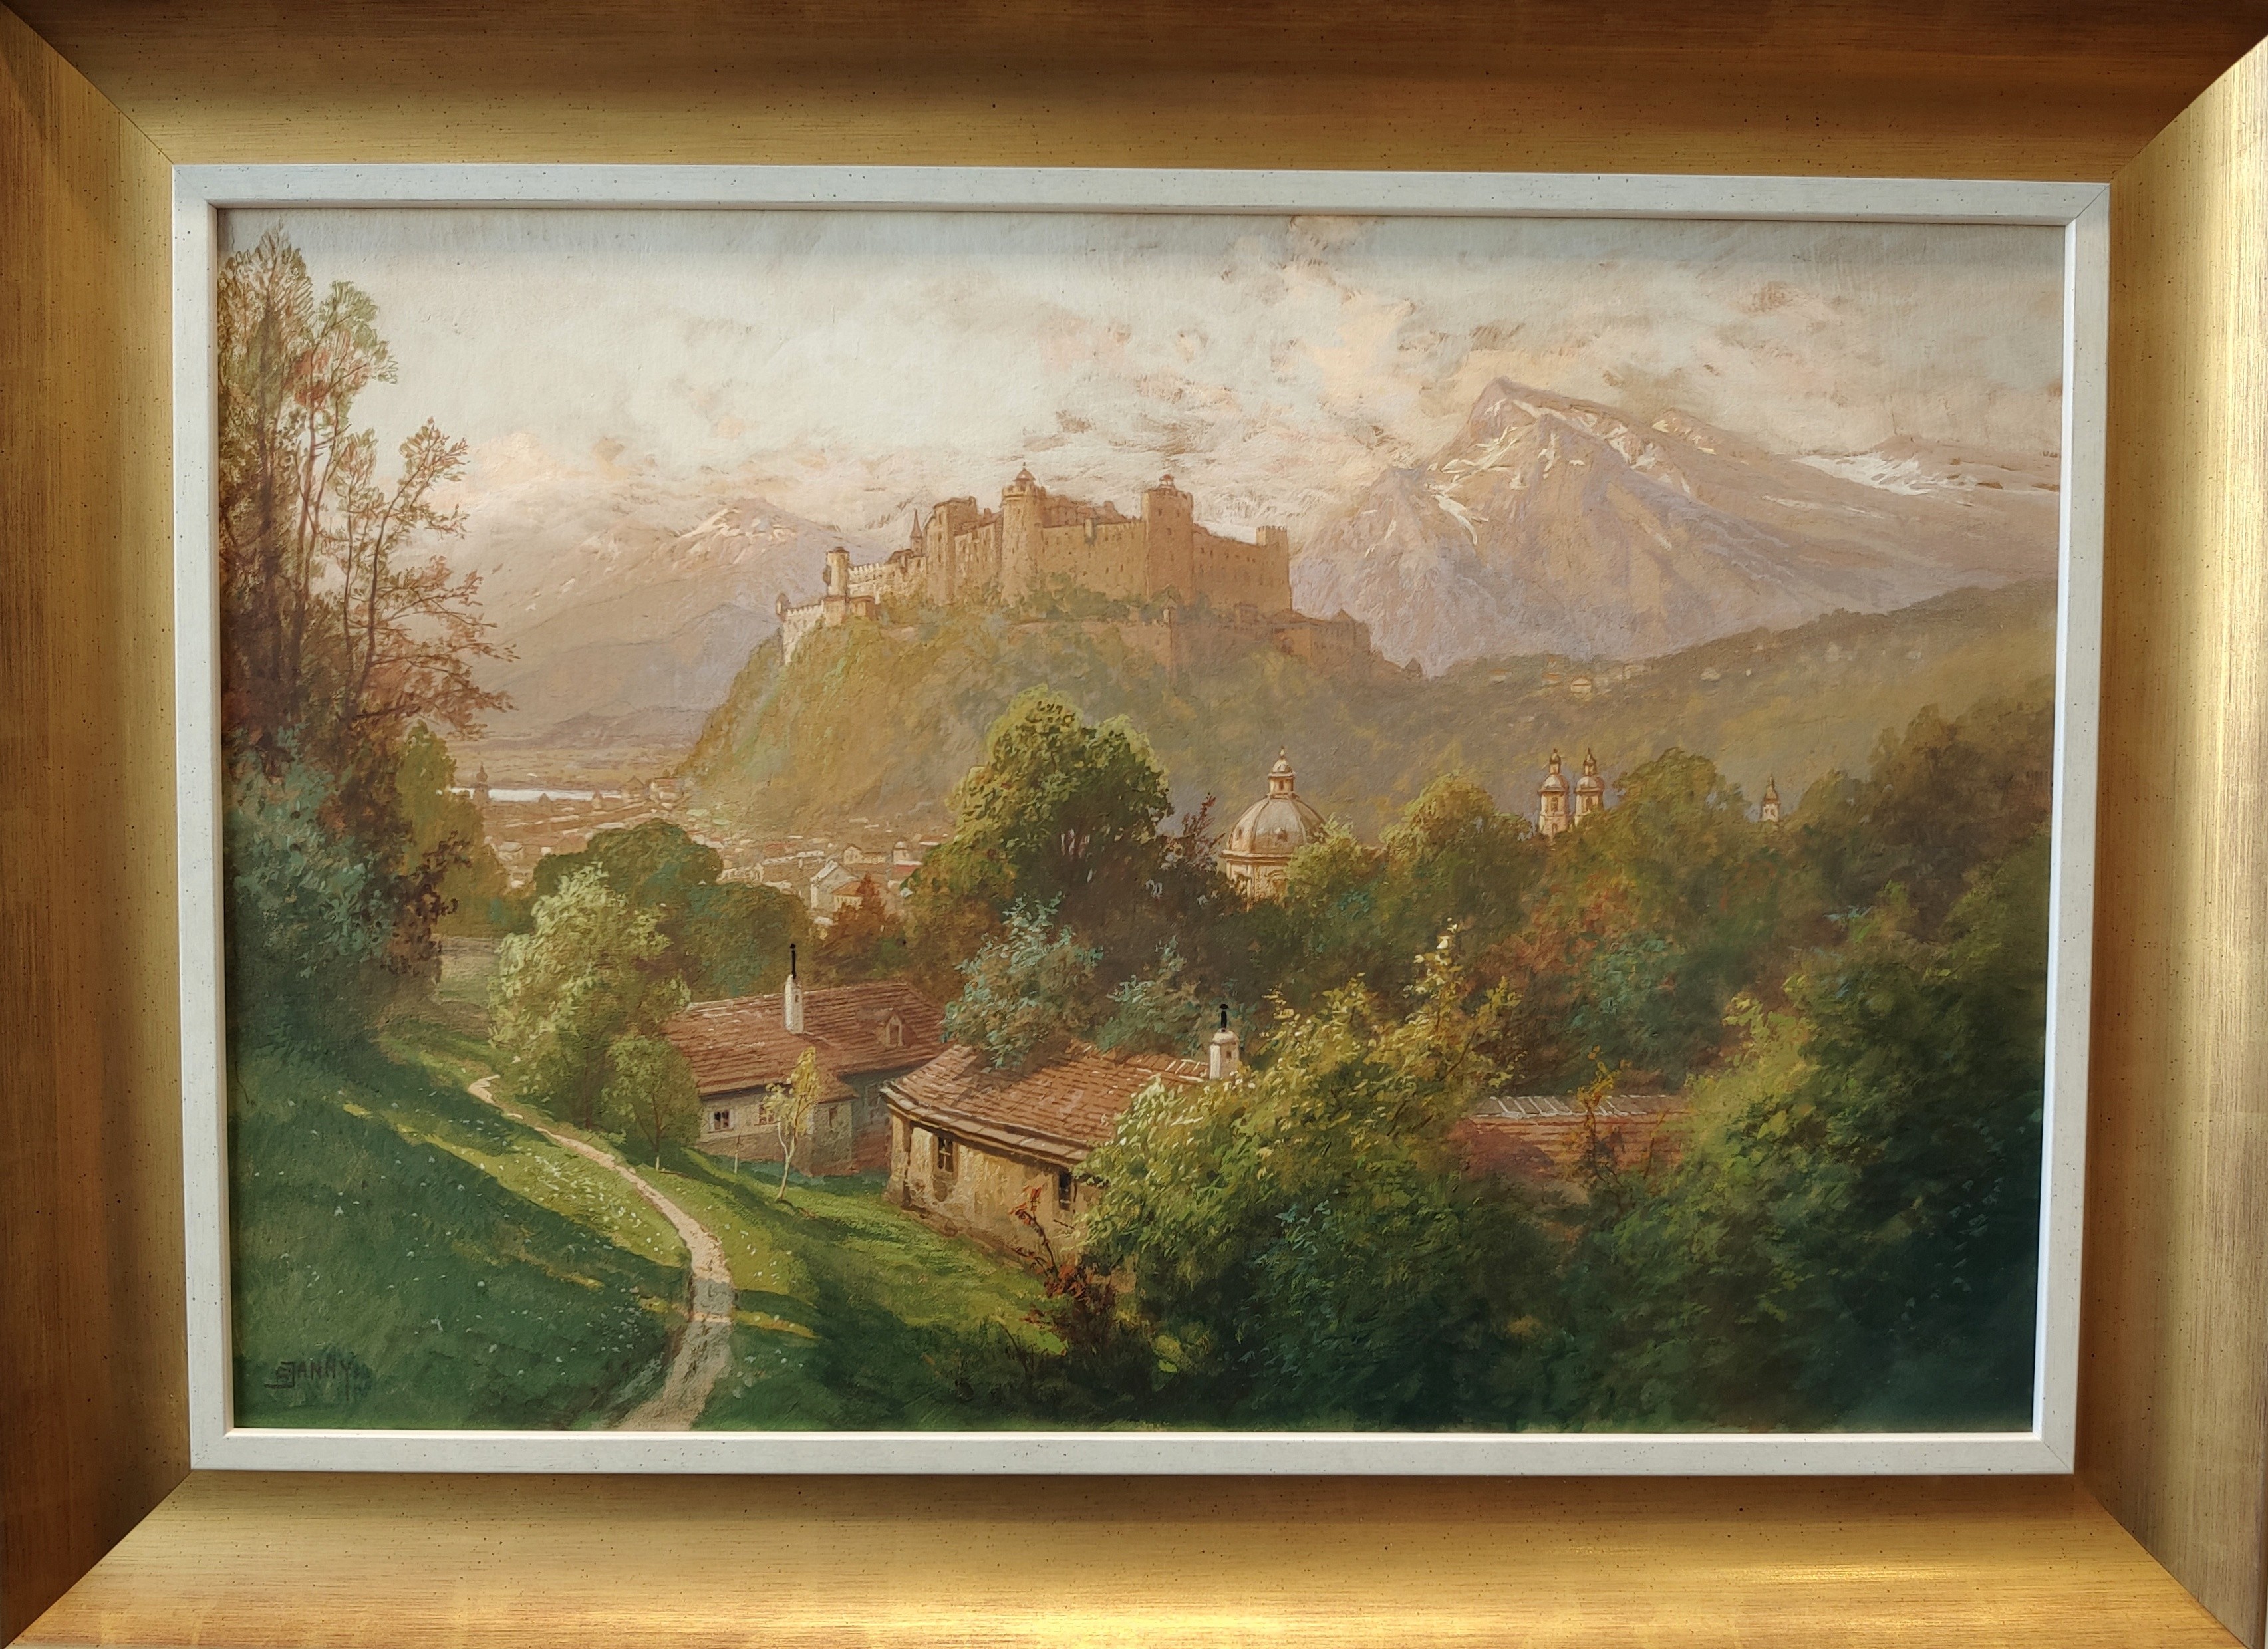 Janny (1864 - 1946) "Blick auf die Festung Hohensalzburg"